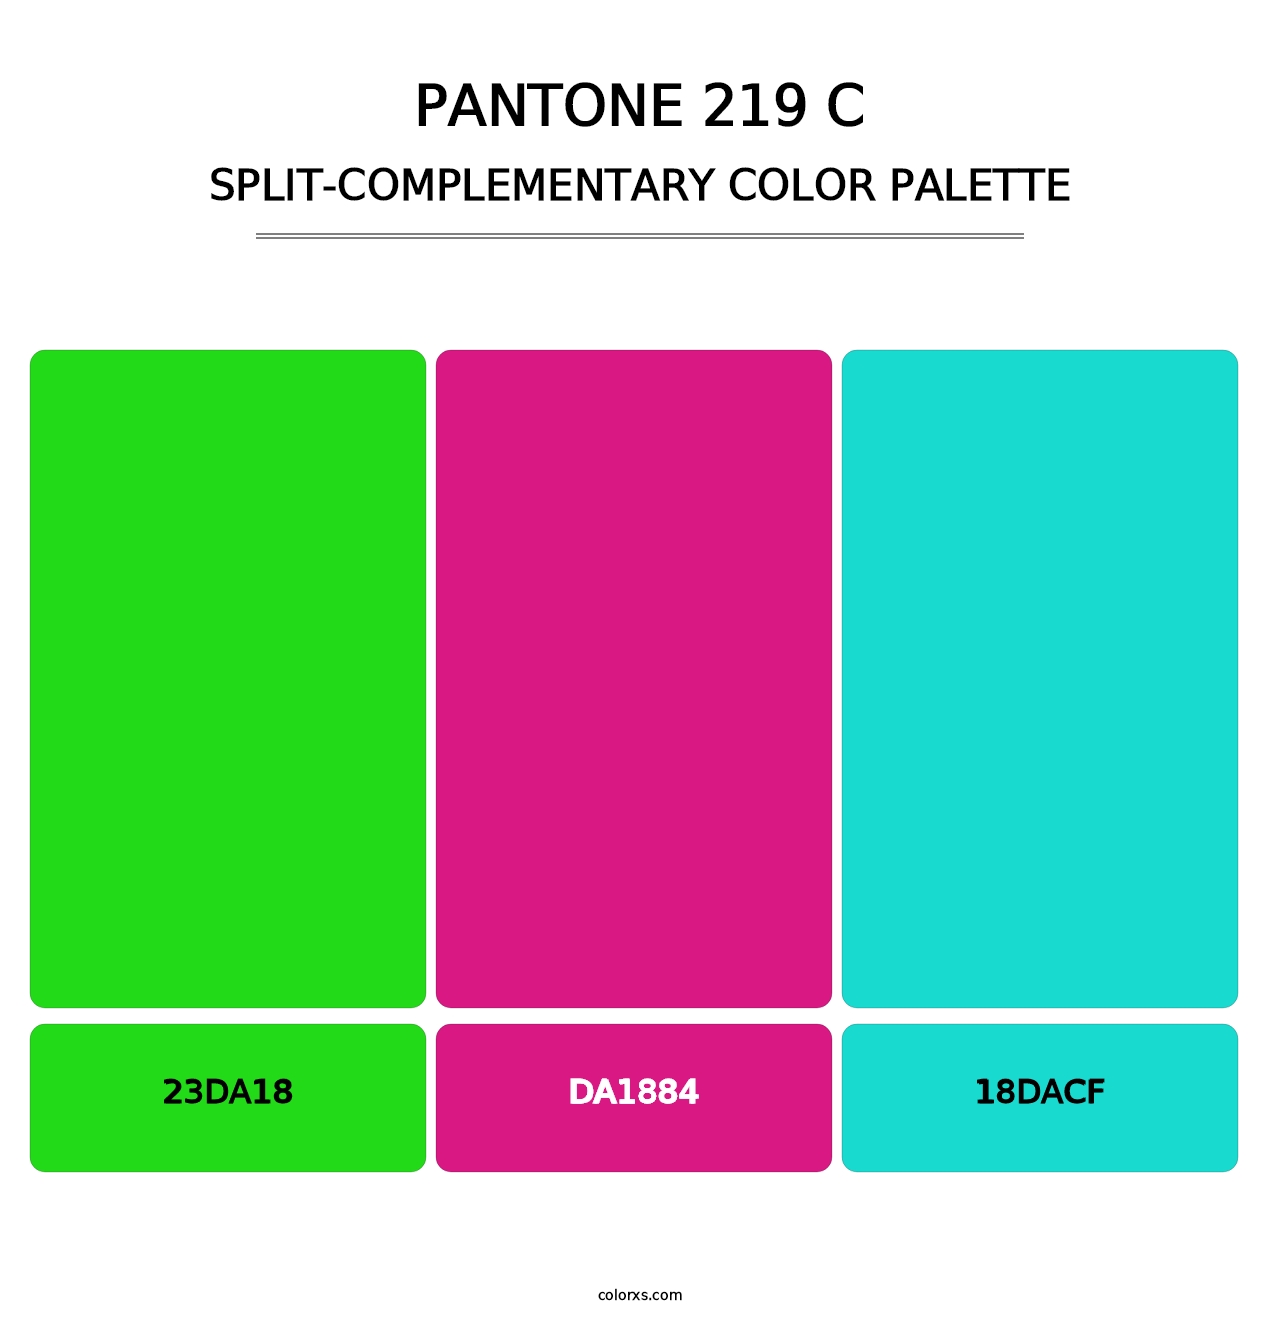 PANTONE 219 C - Split-Complementary Color Palette